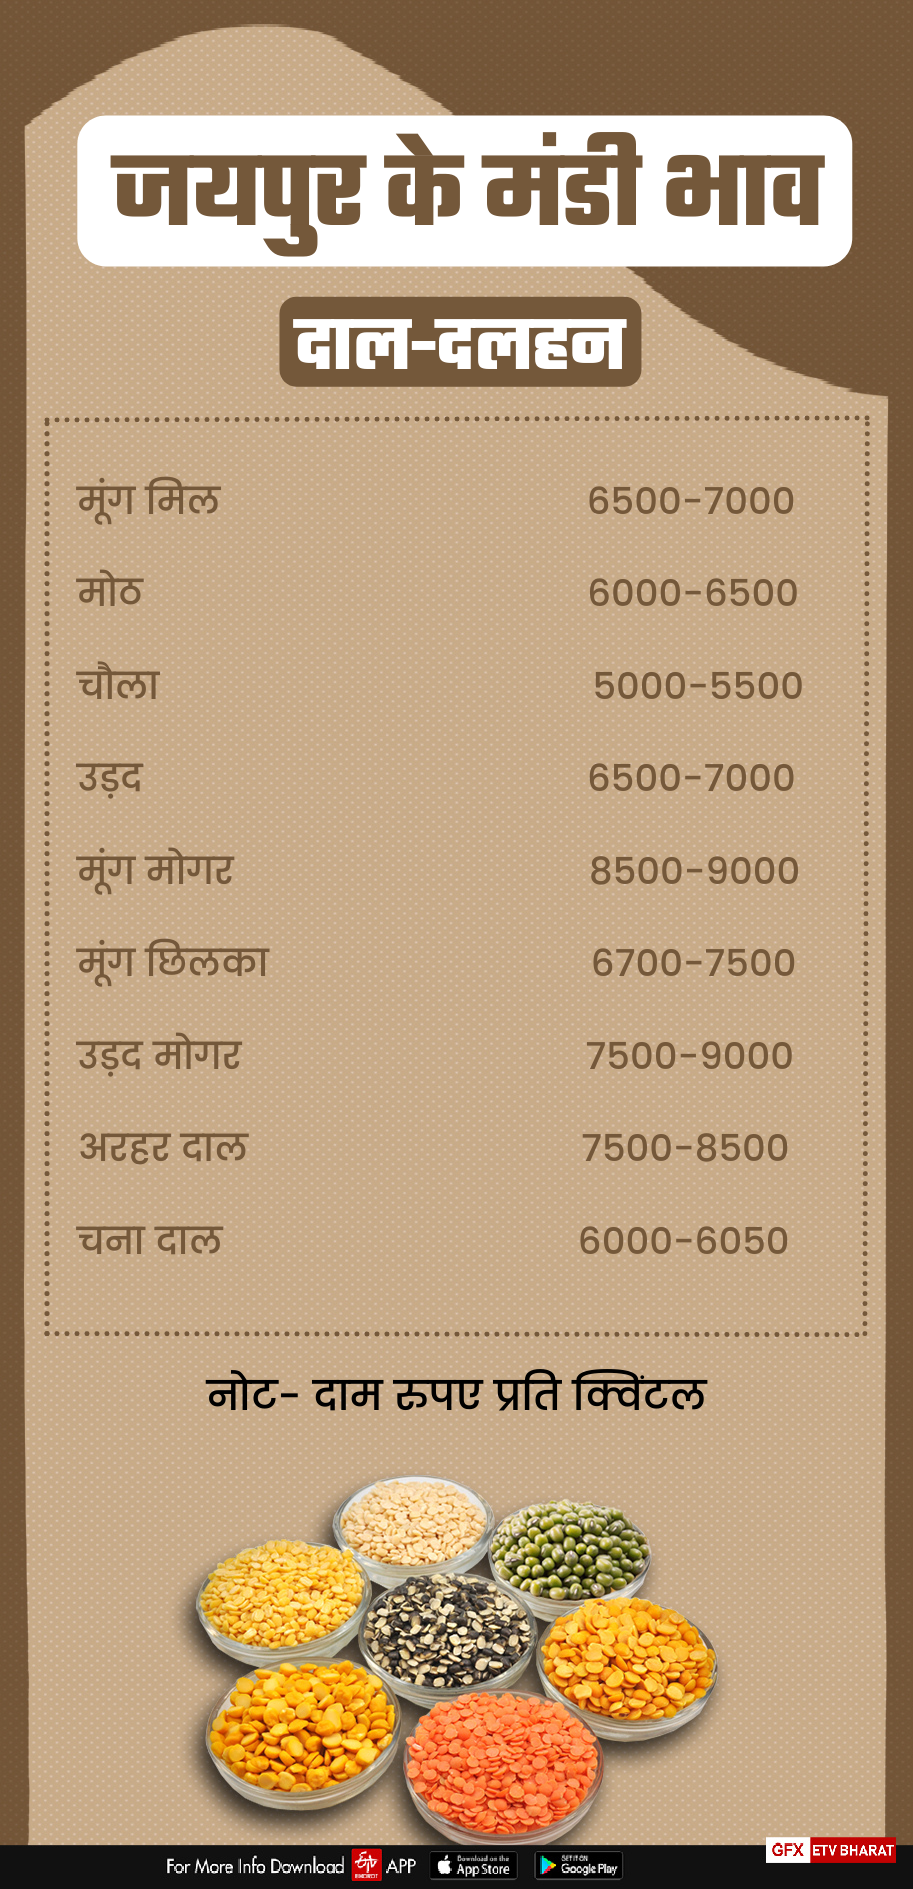 Jaipur Mandi Rate, Mandi of Jaipur